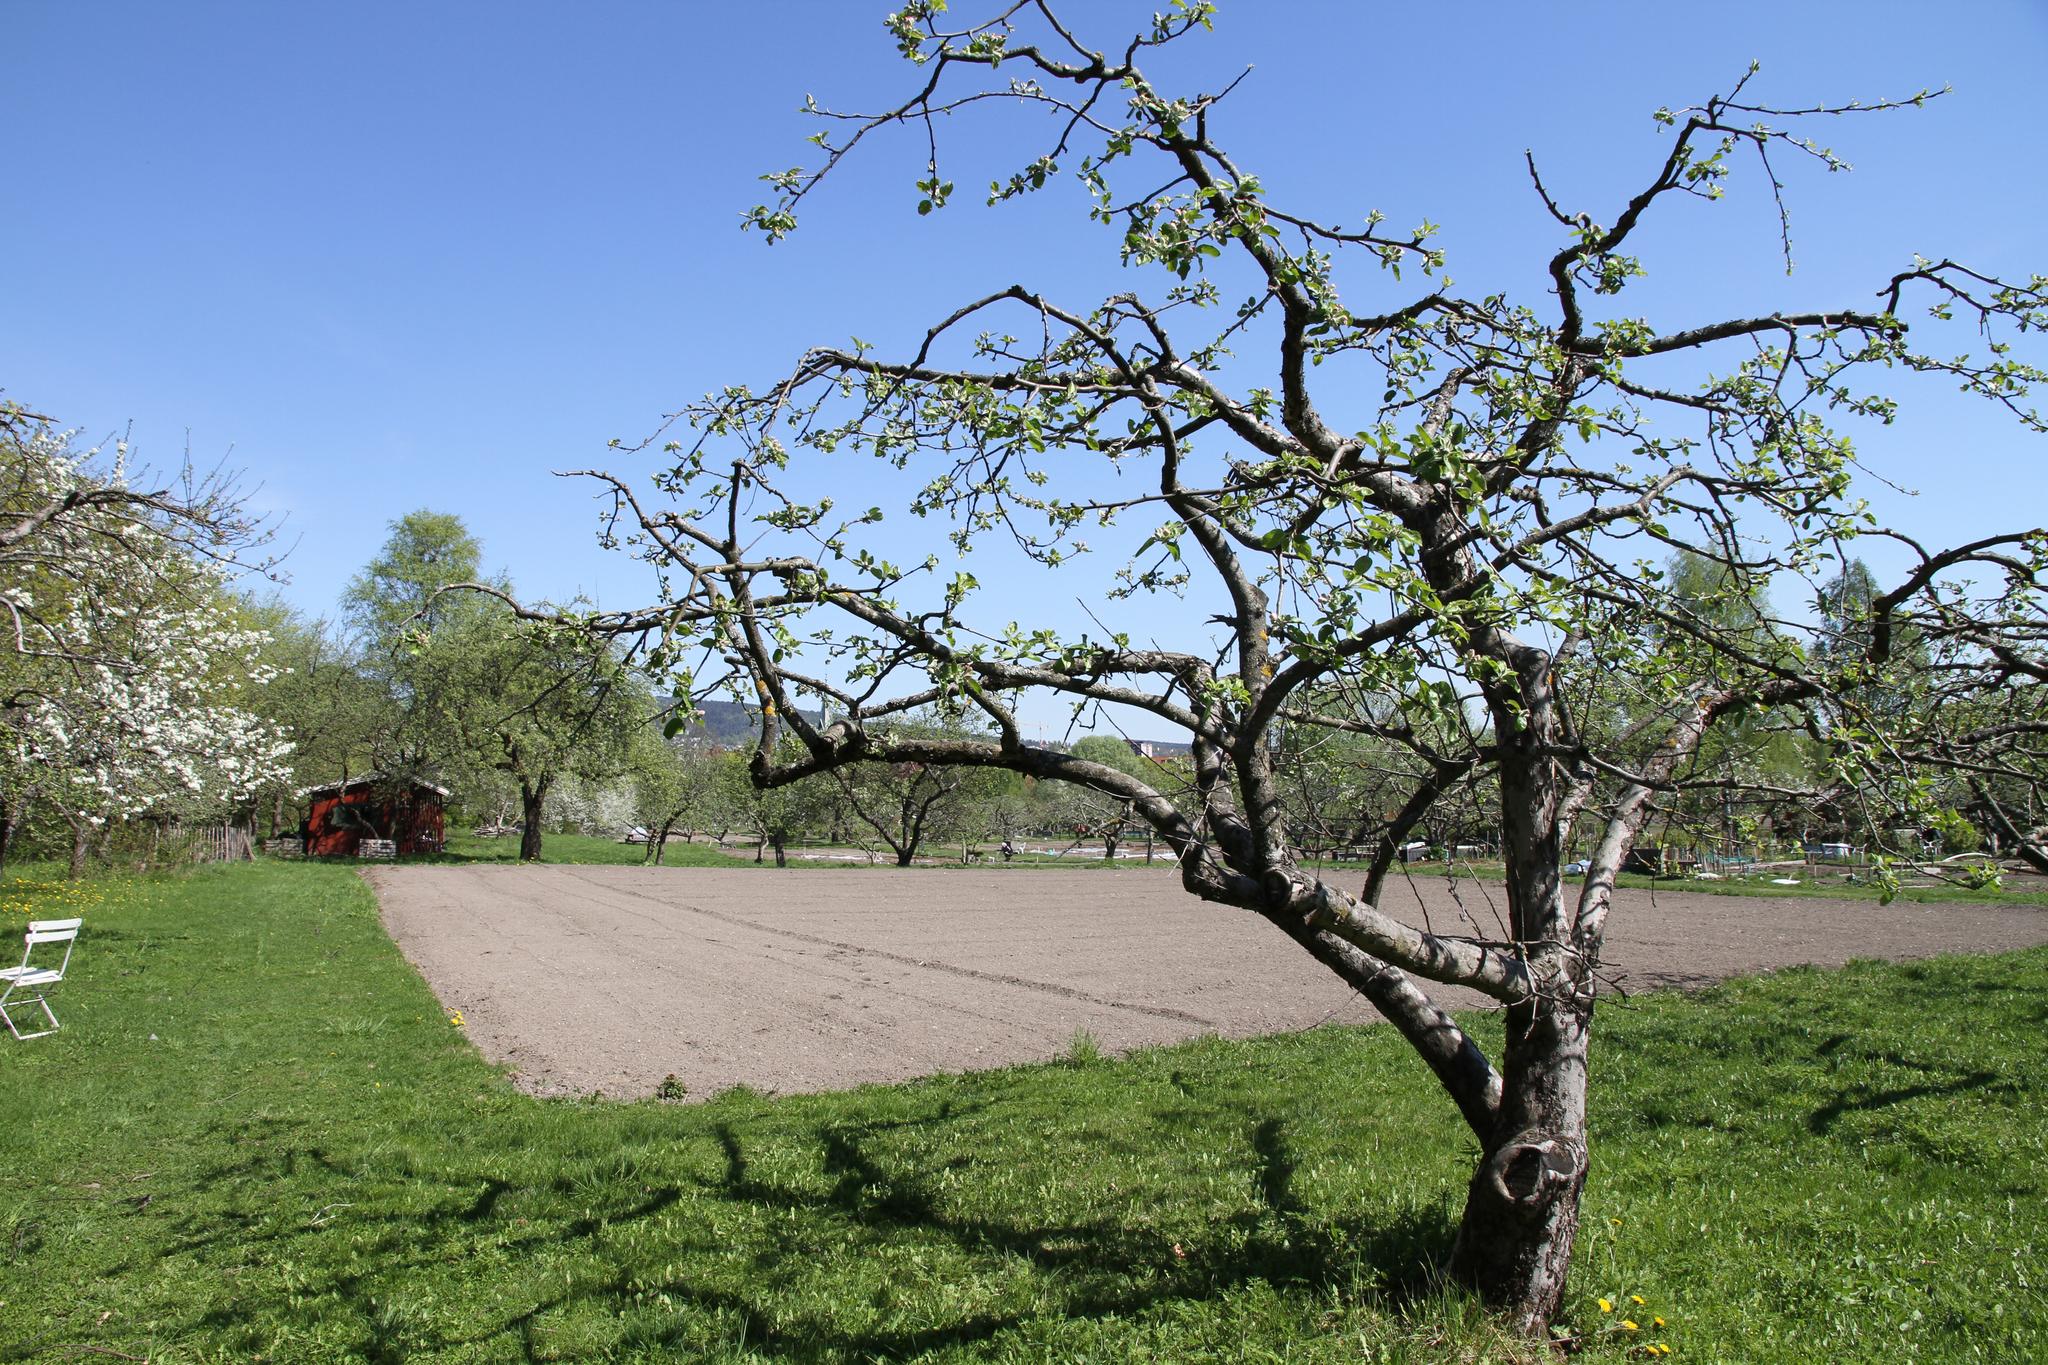 Det er sjokkerende at Geitmyra matkultursenter for barn skal få lov til å hugge ned gamle epletrær og bygge et undervisningsbygg der det i dag er matjord i den kommunale skolehagen på Geitmyra, skriver debattanten.